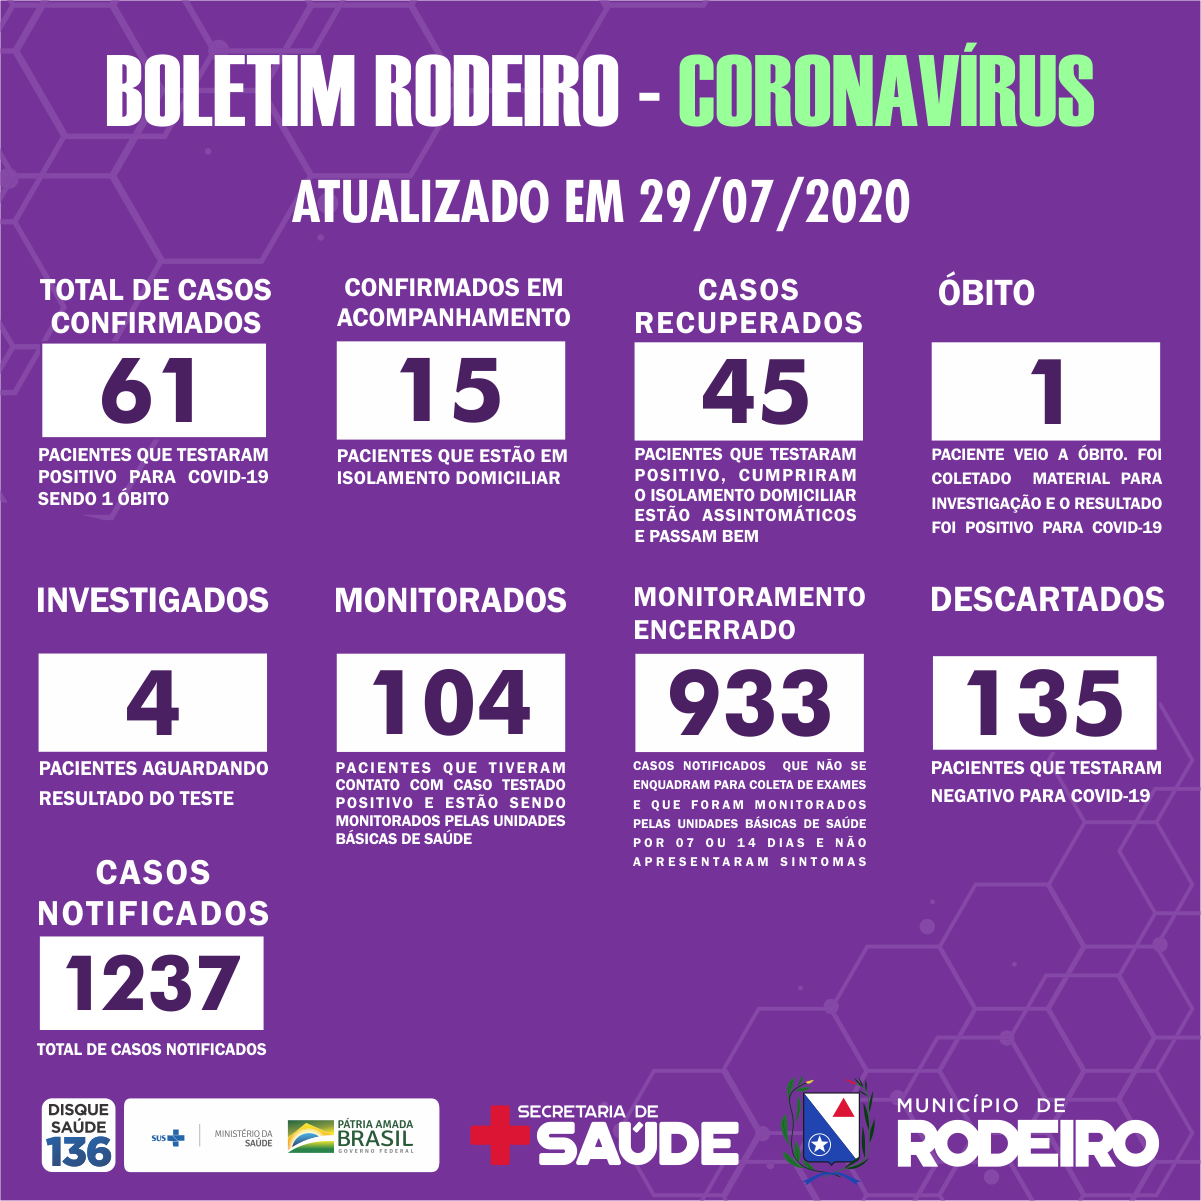 Boletim Epidemiológico do Município de Rodeiro coronavírus, atualizado em 29/07/2020